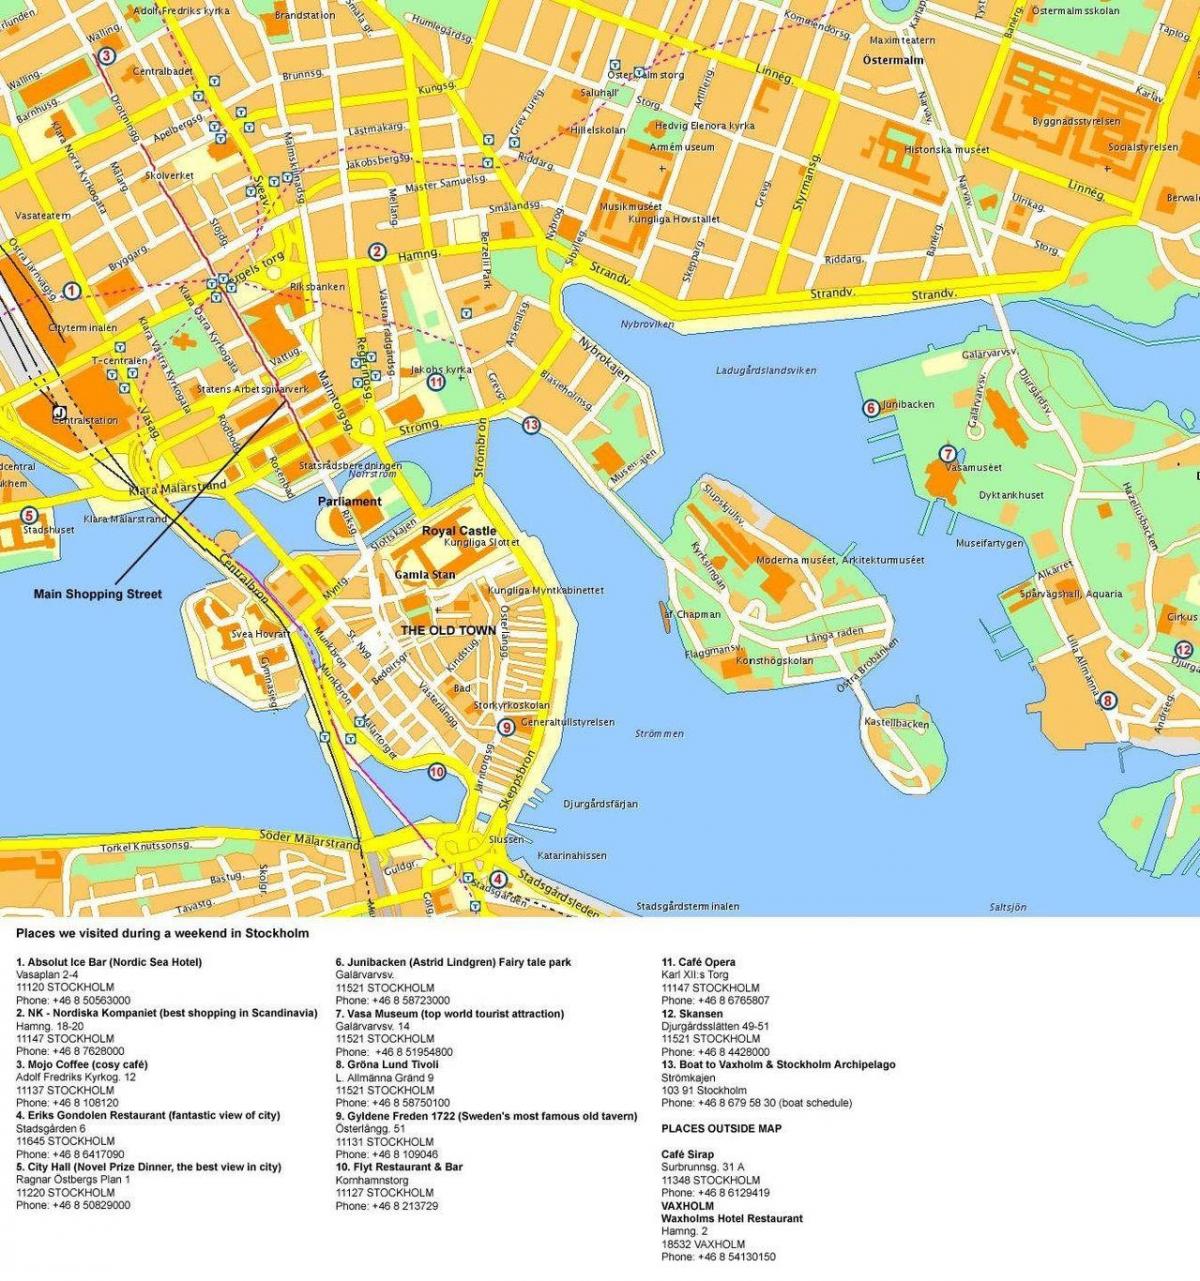 χάρτης της Στοκχόλμης cruise terminal